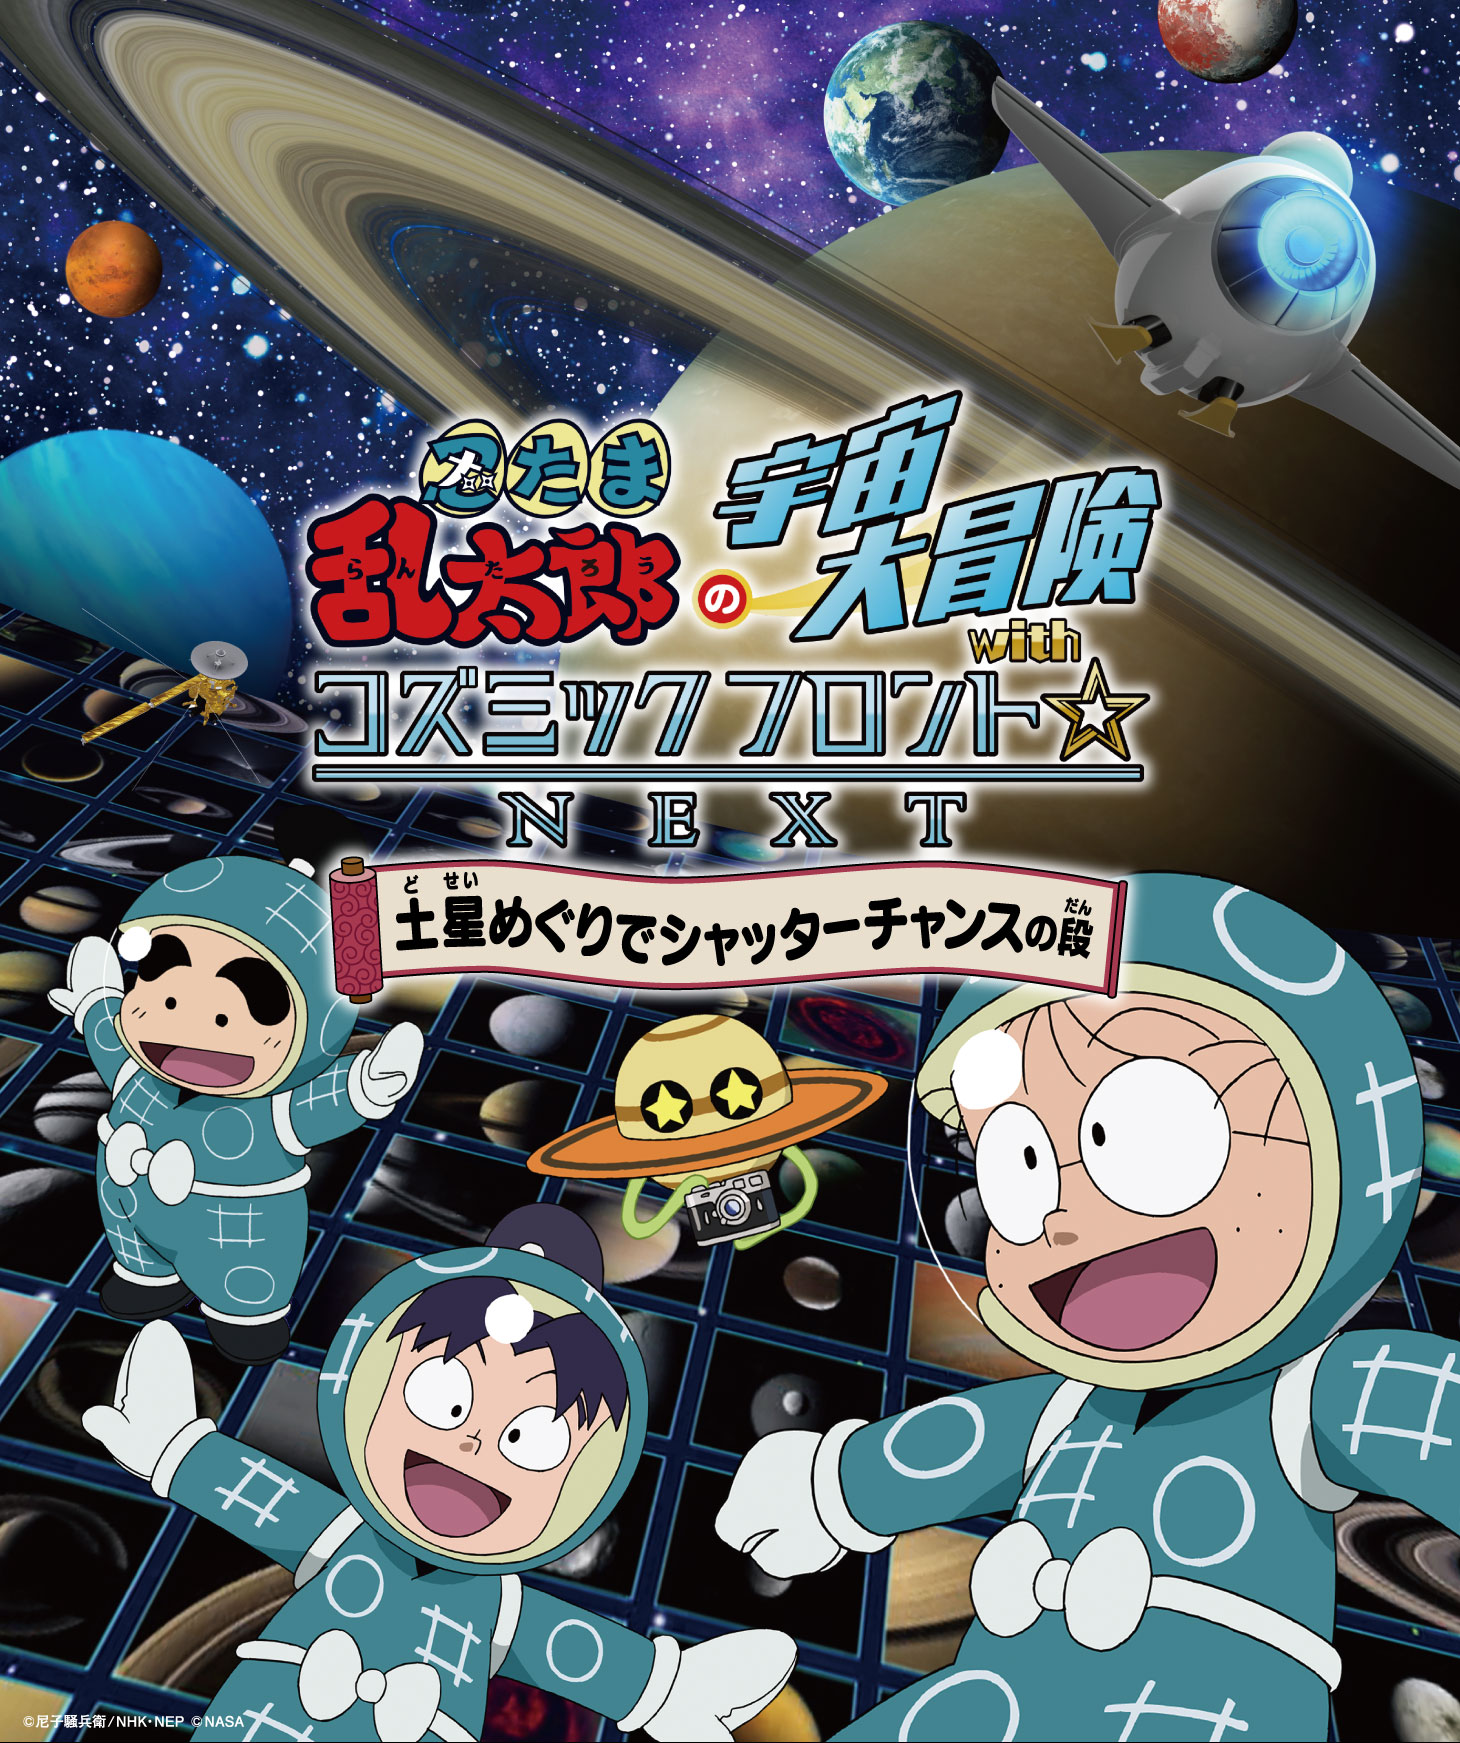 忍たま乱太郎の宇宙大冒険ポスター。宇宙を背景に乱太郎ときり丸としんべえが描かれています。